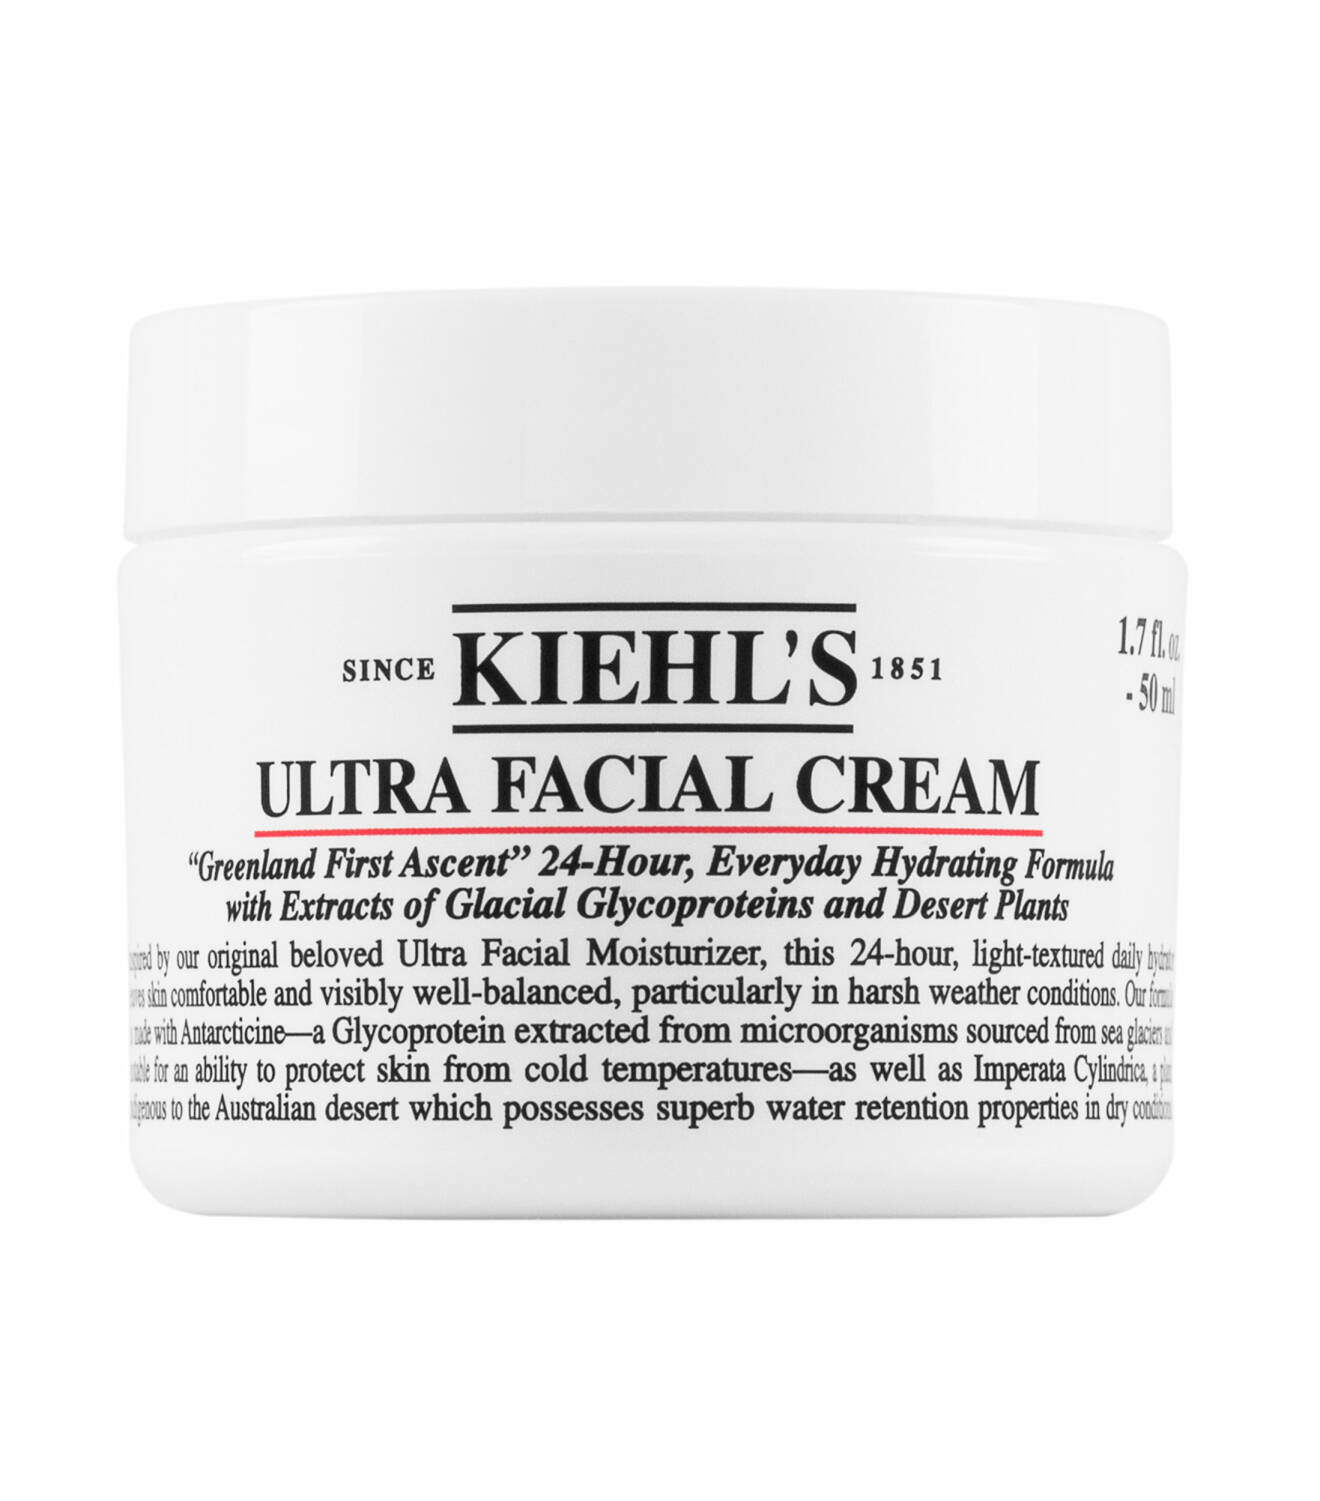 Kiehls ultra facial cream.